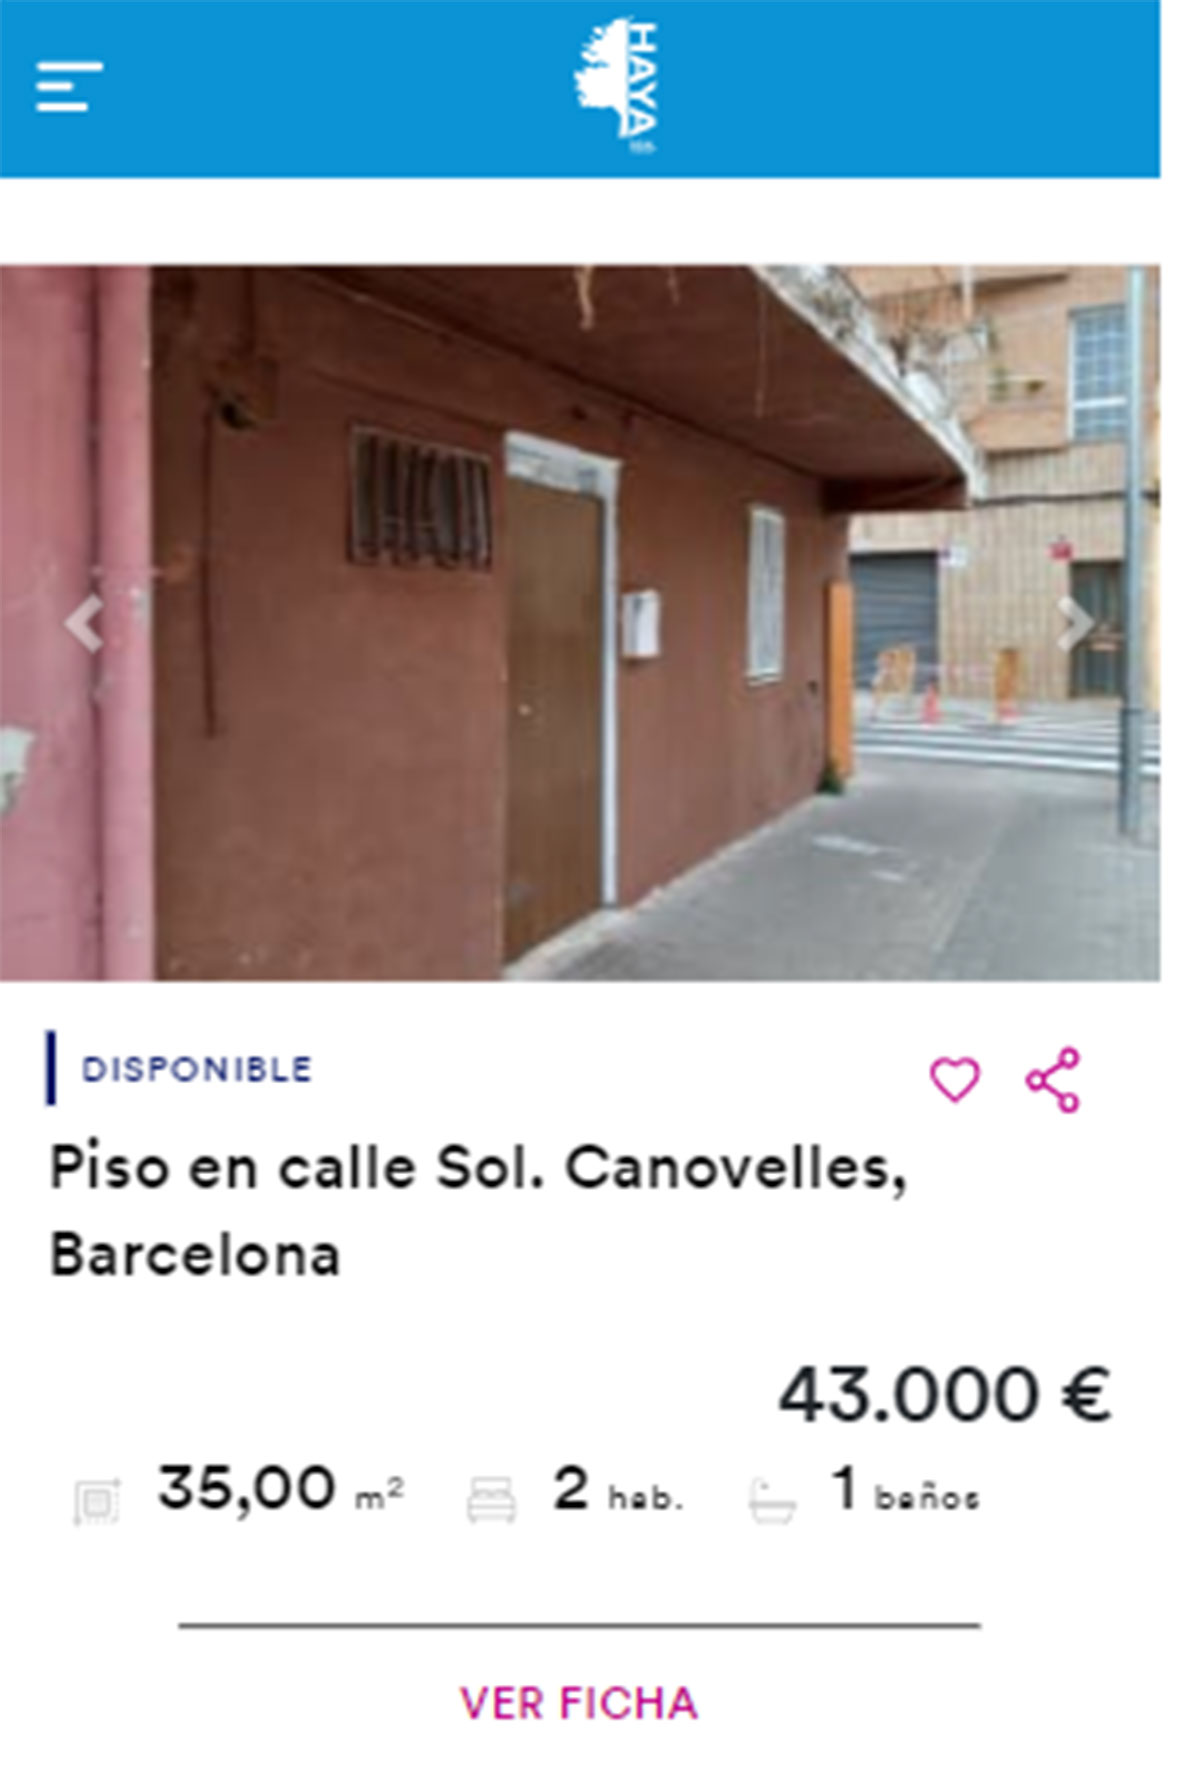 Piso en Barcelona por 43.000 euros